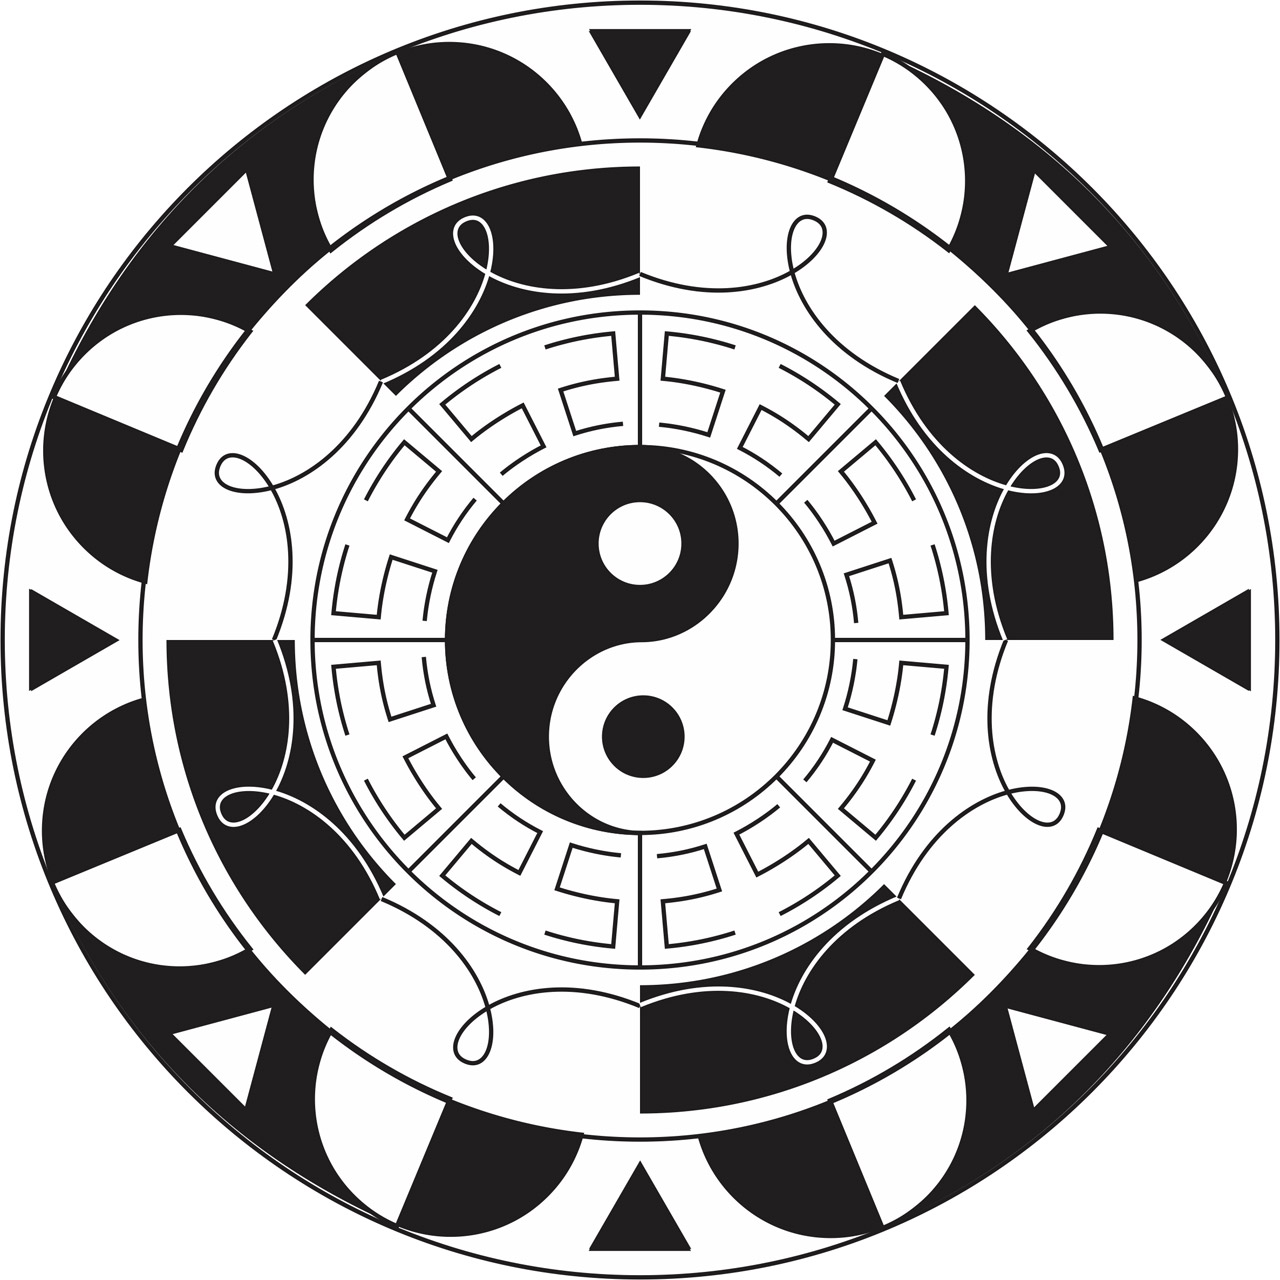 A mandala in black and white.